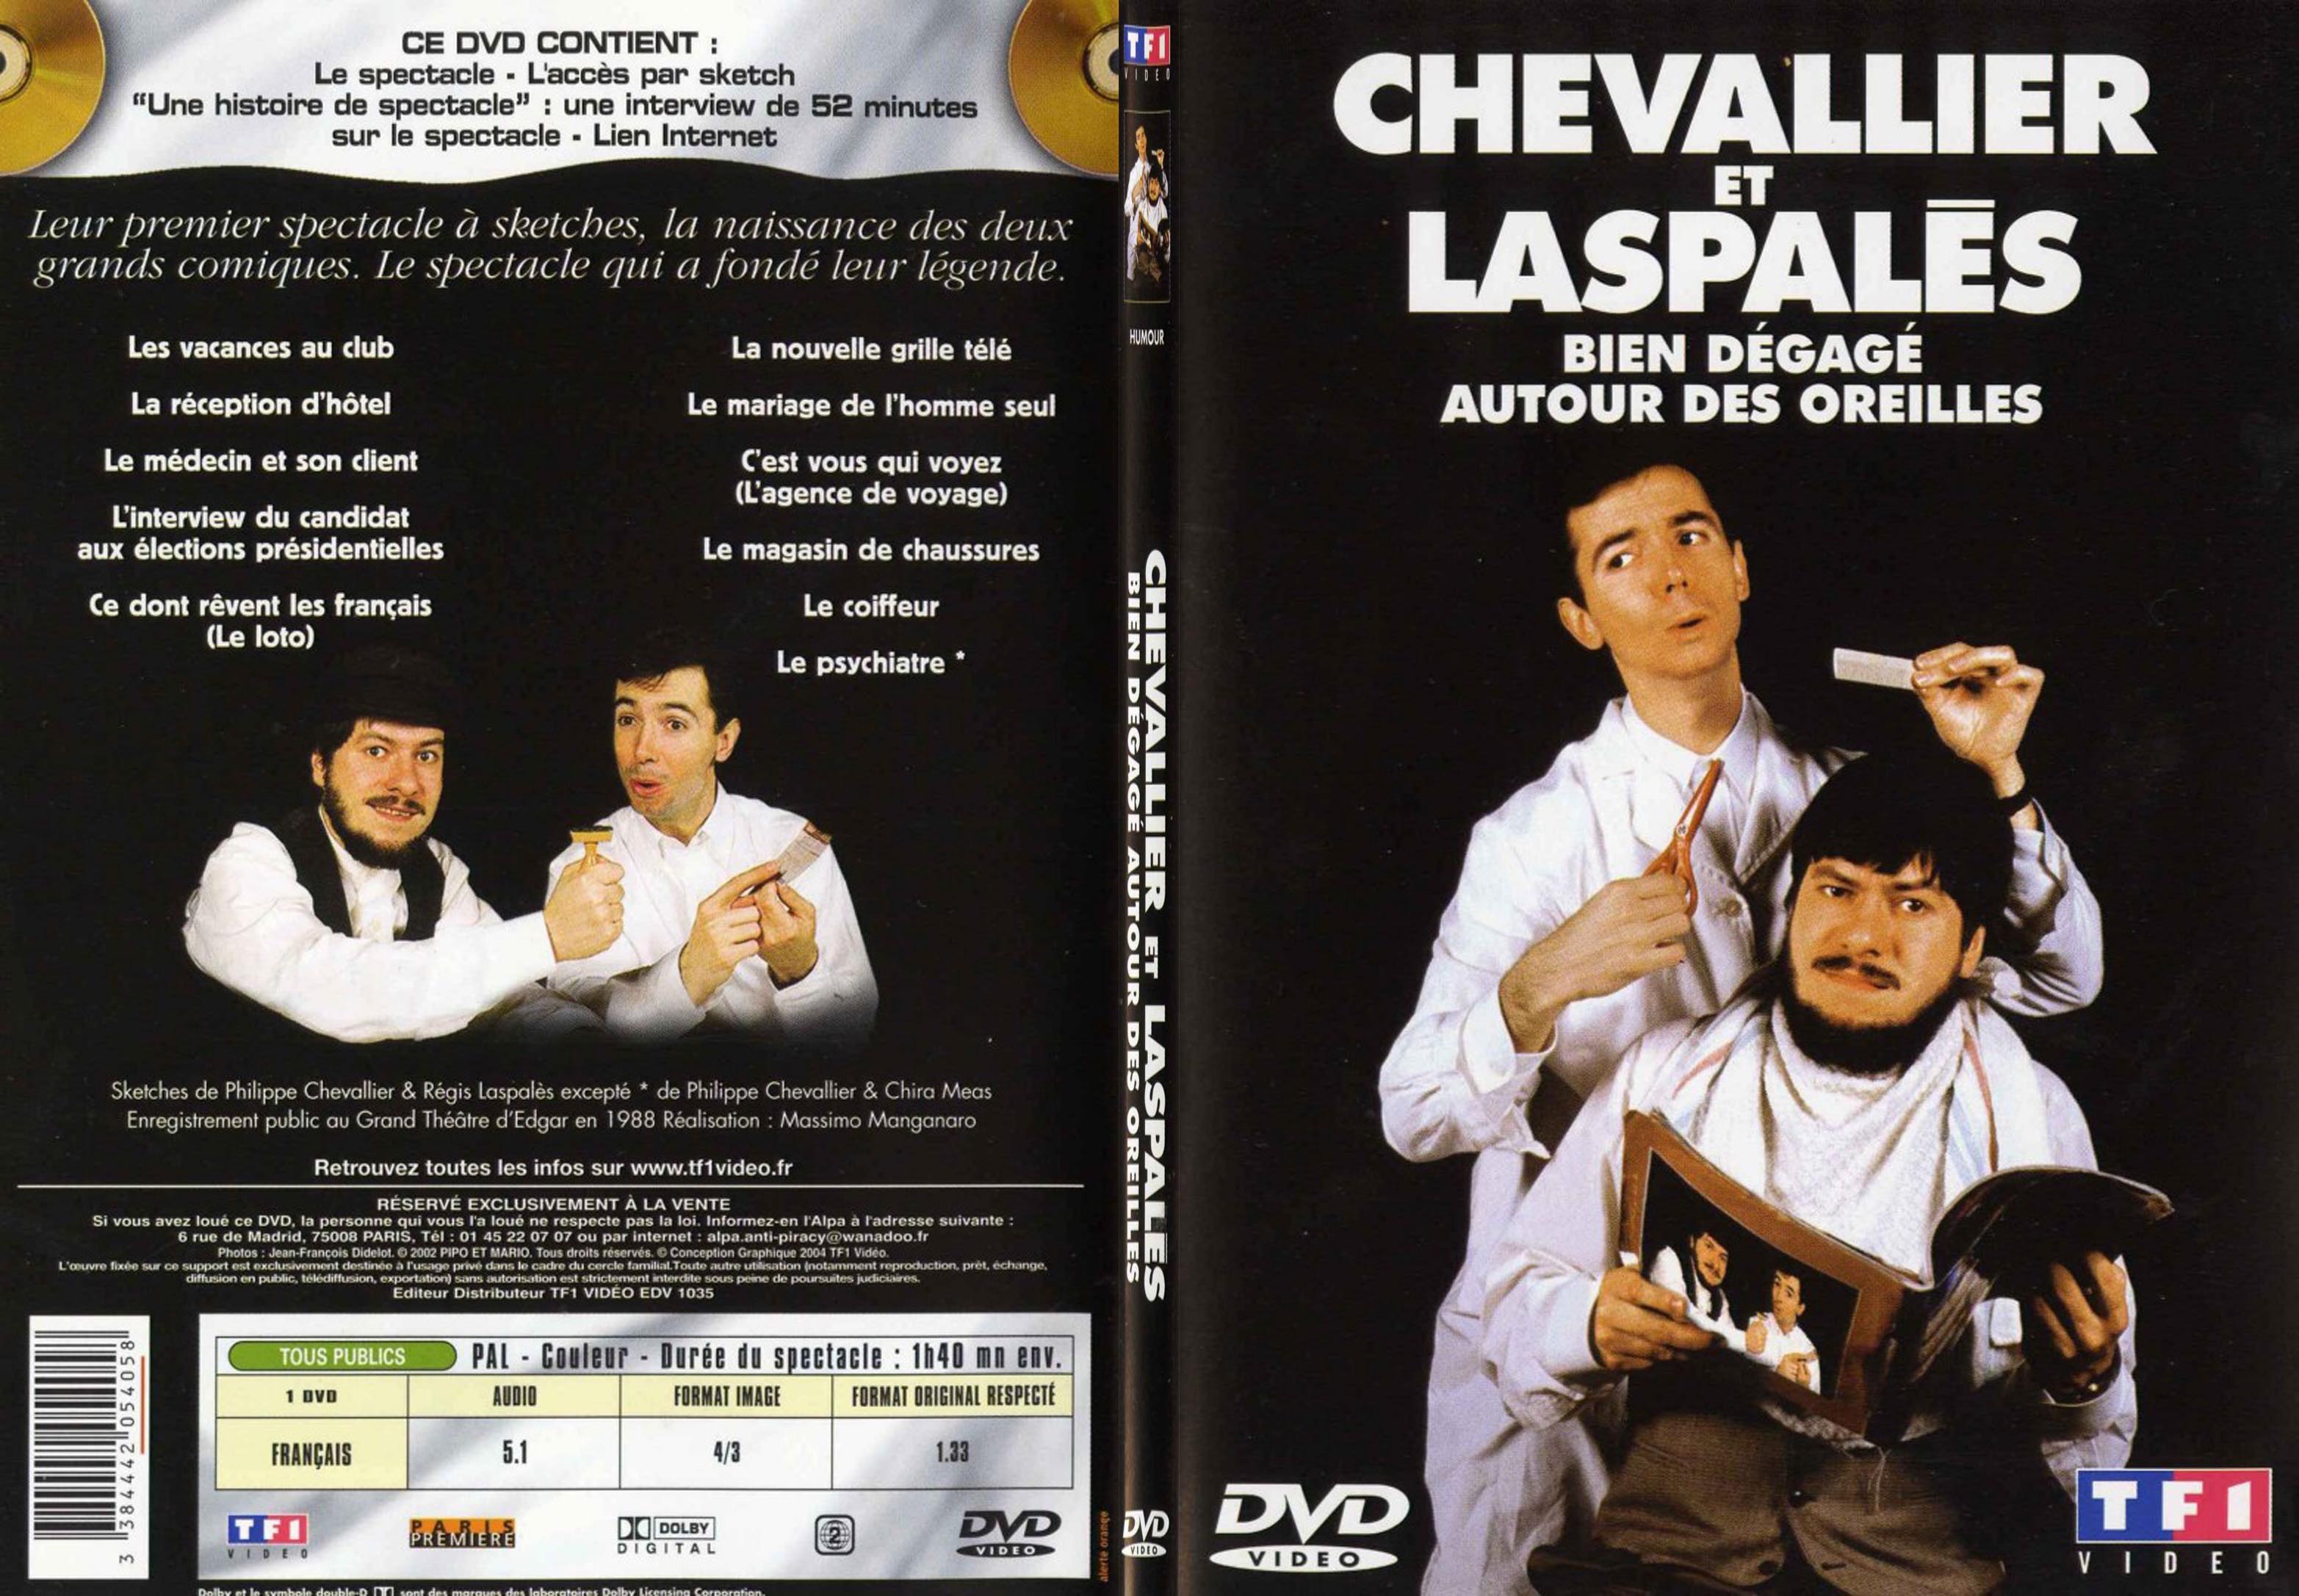 Jaquette DVD Chevalier et Laspales bien degage autour des oreilles - SLIM